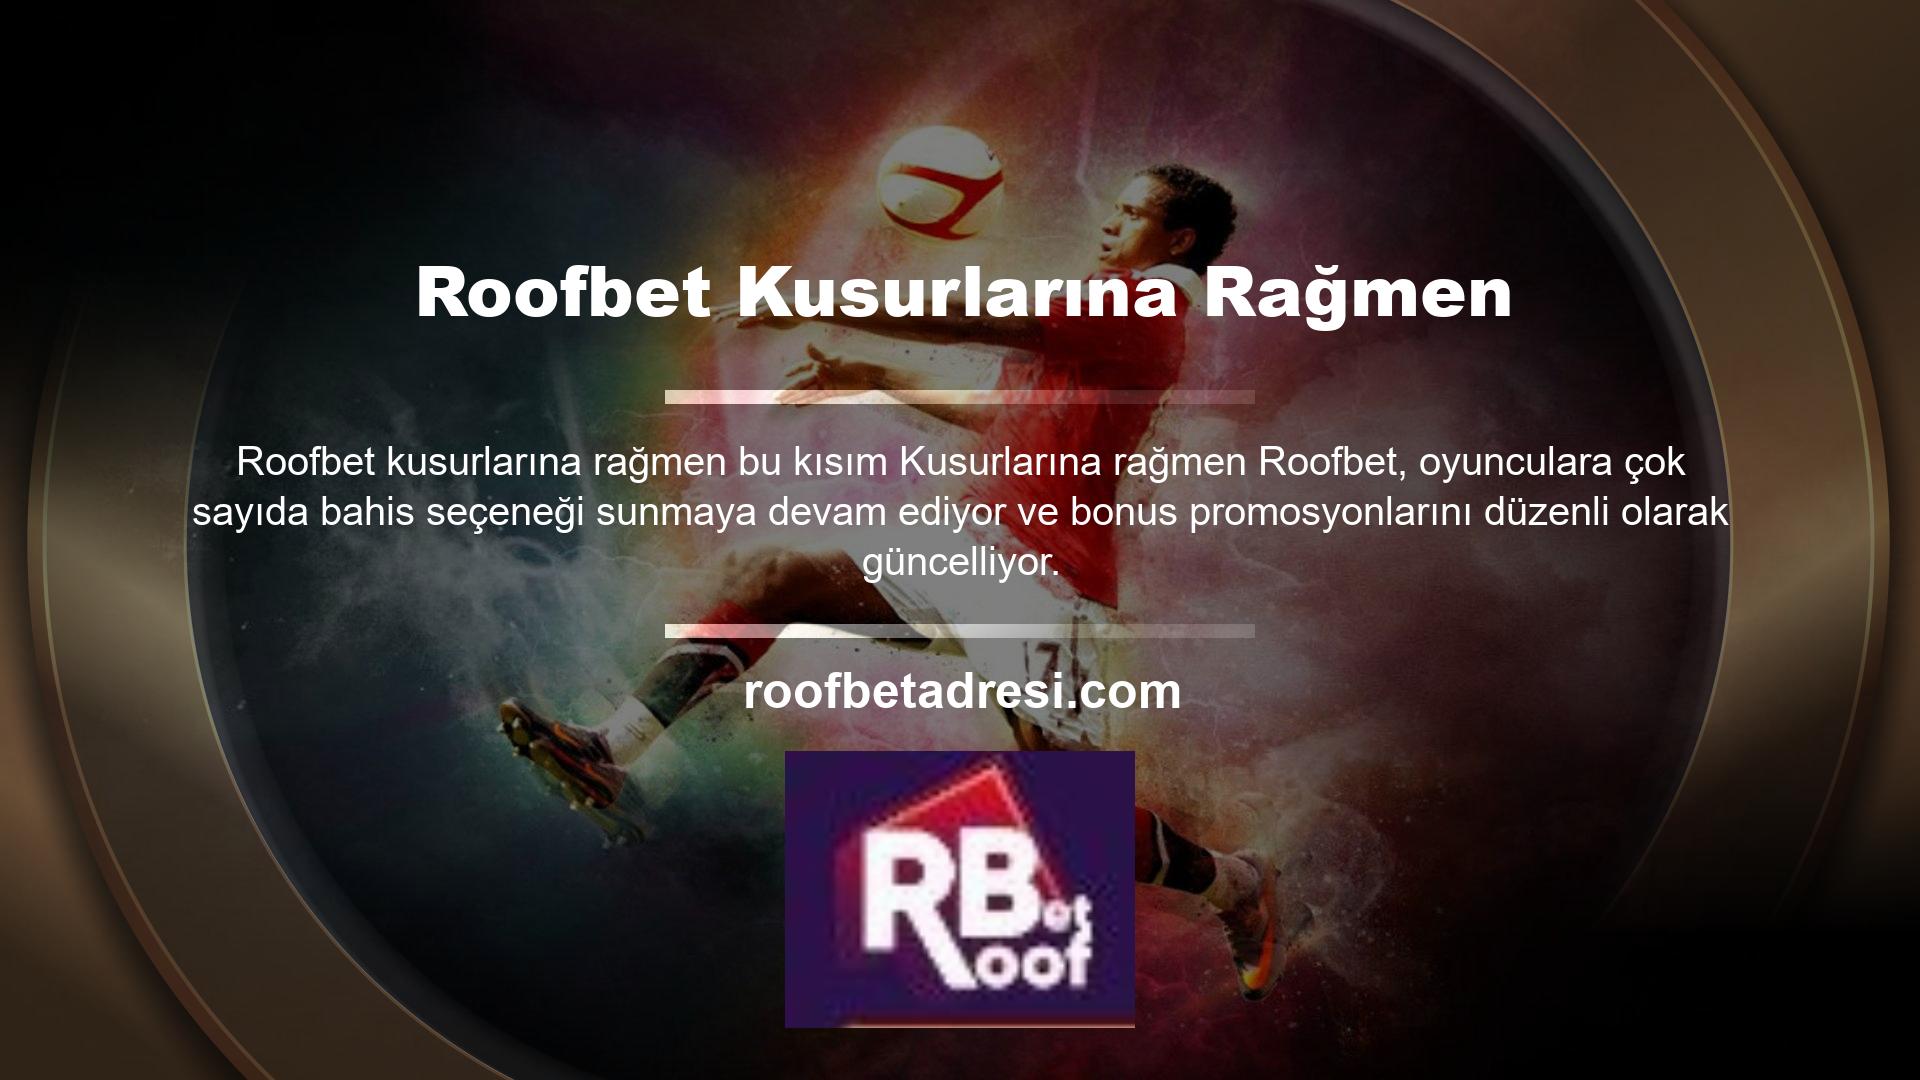 Roofbet, kullanıcılarına para kazandırmak amacıyla ülke dışında oluşturulmuş bir web sitesidir